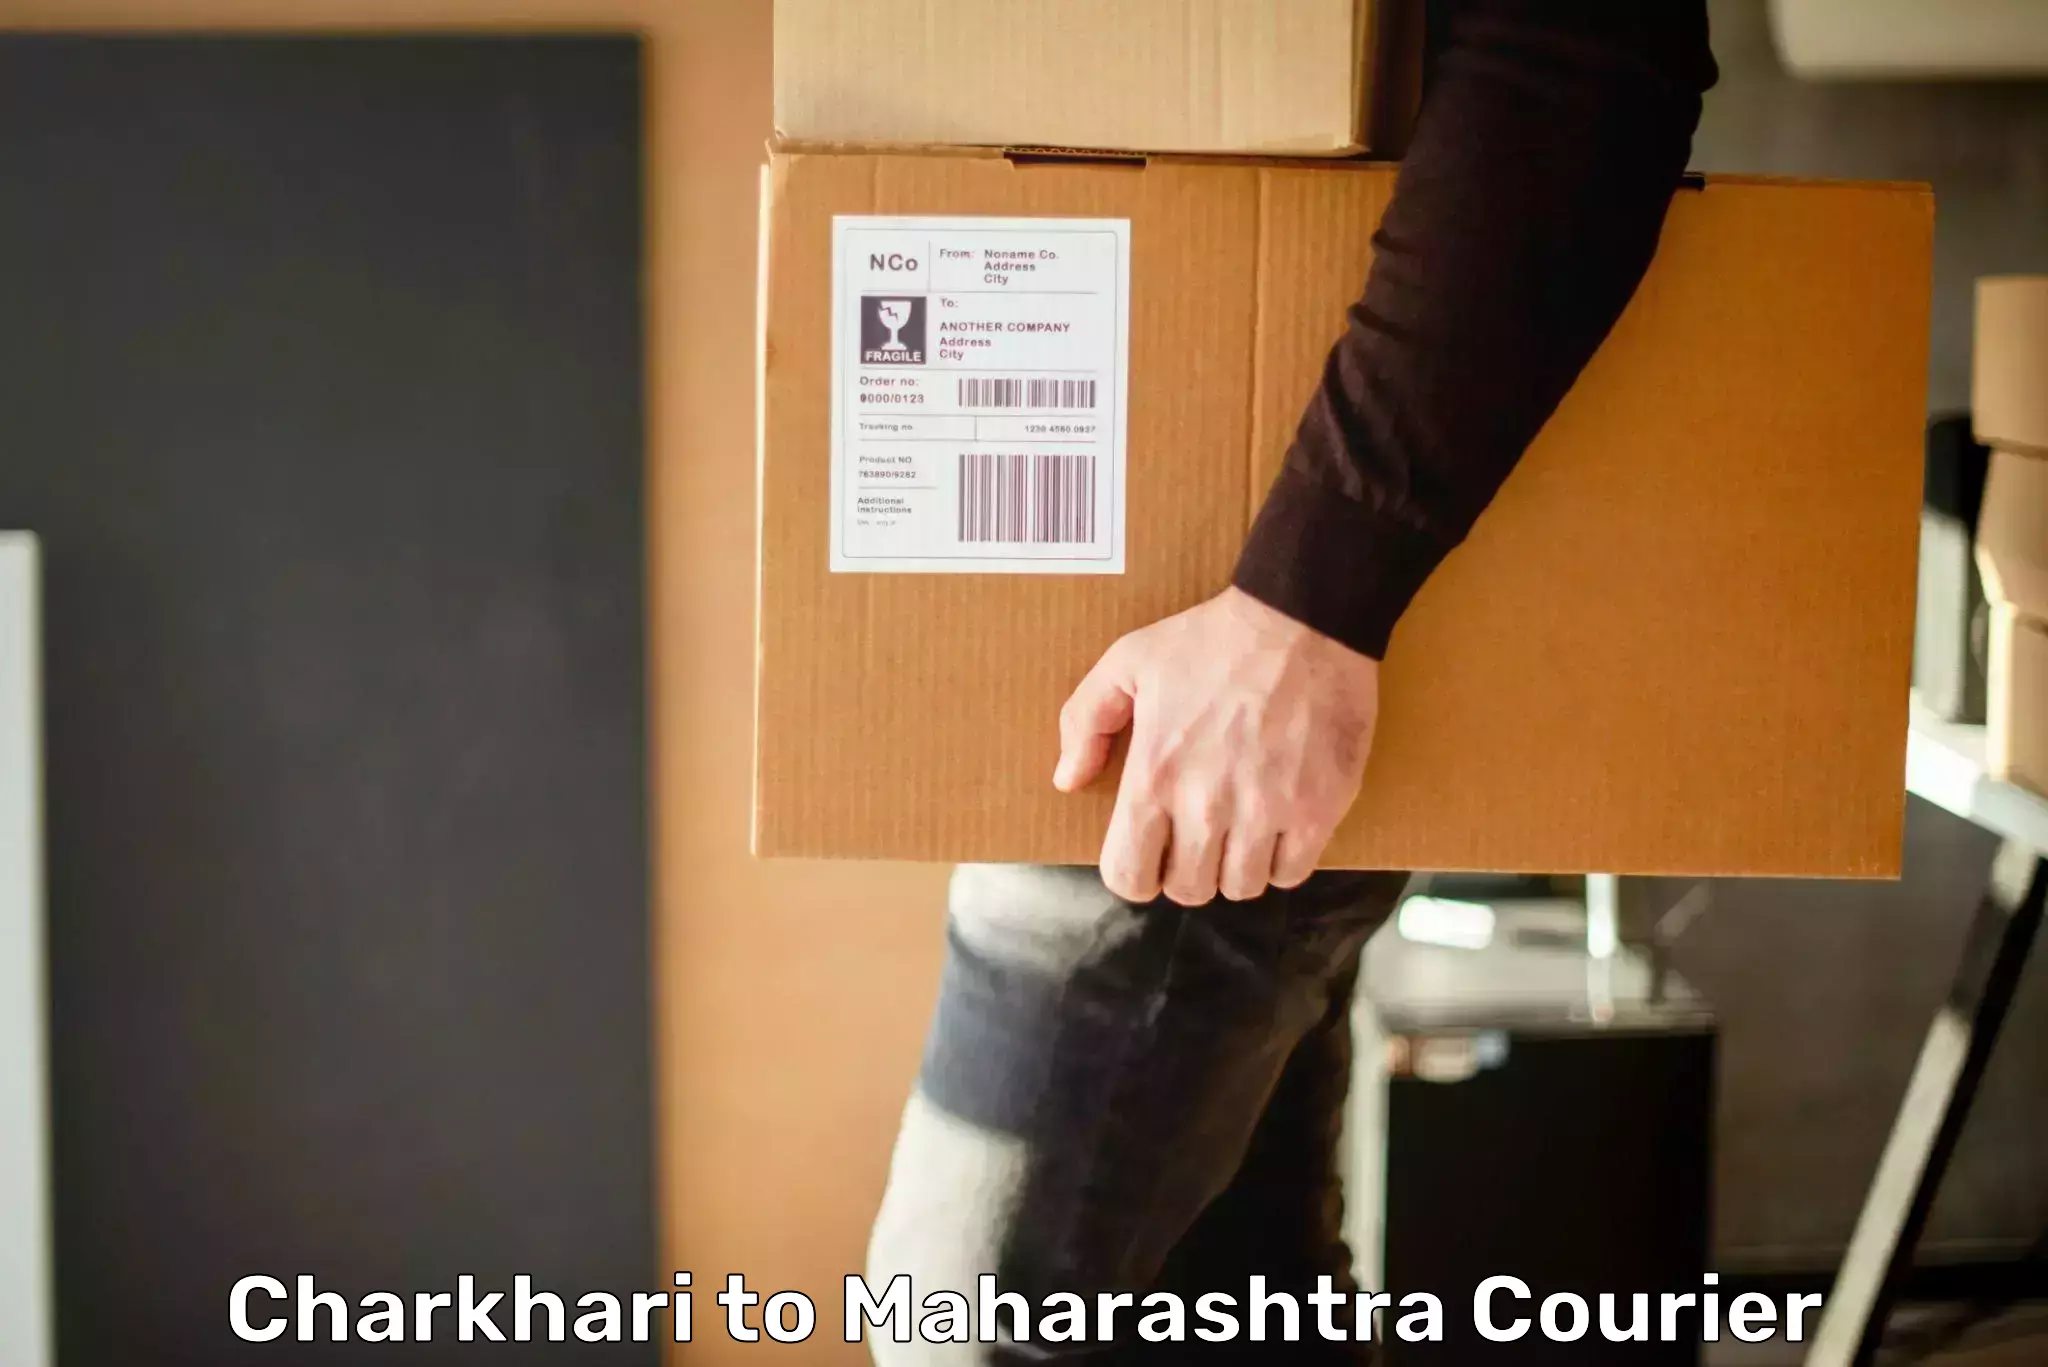 Delivery service partnership Charkhari to Maharashtra